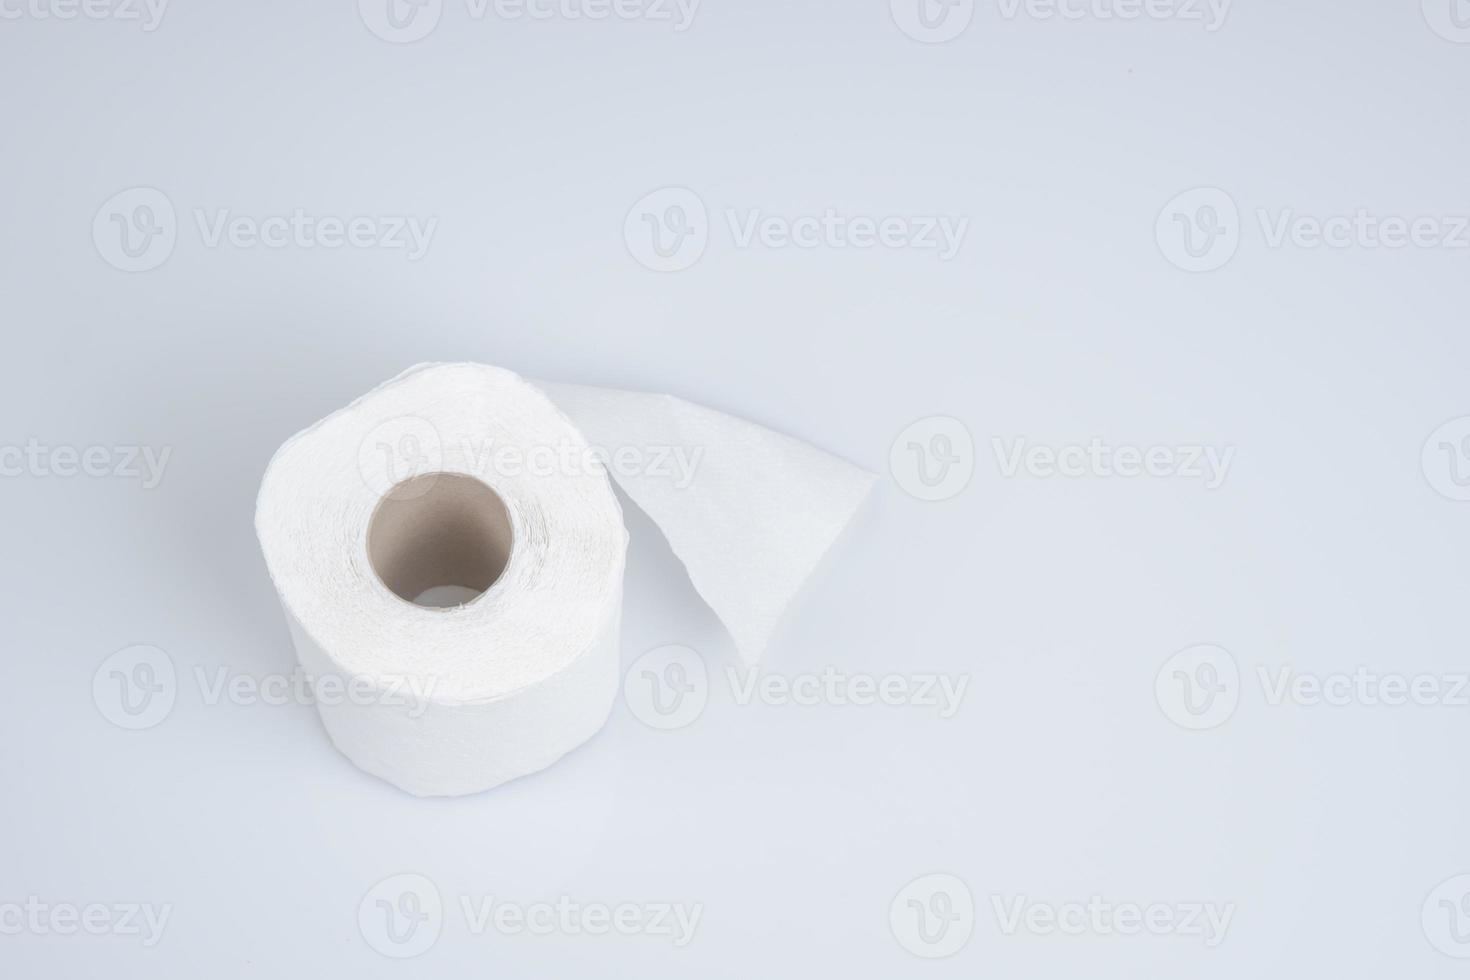 Toilettenpapierrolle lokalisiert auf blauem Hintergrund foto